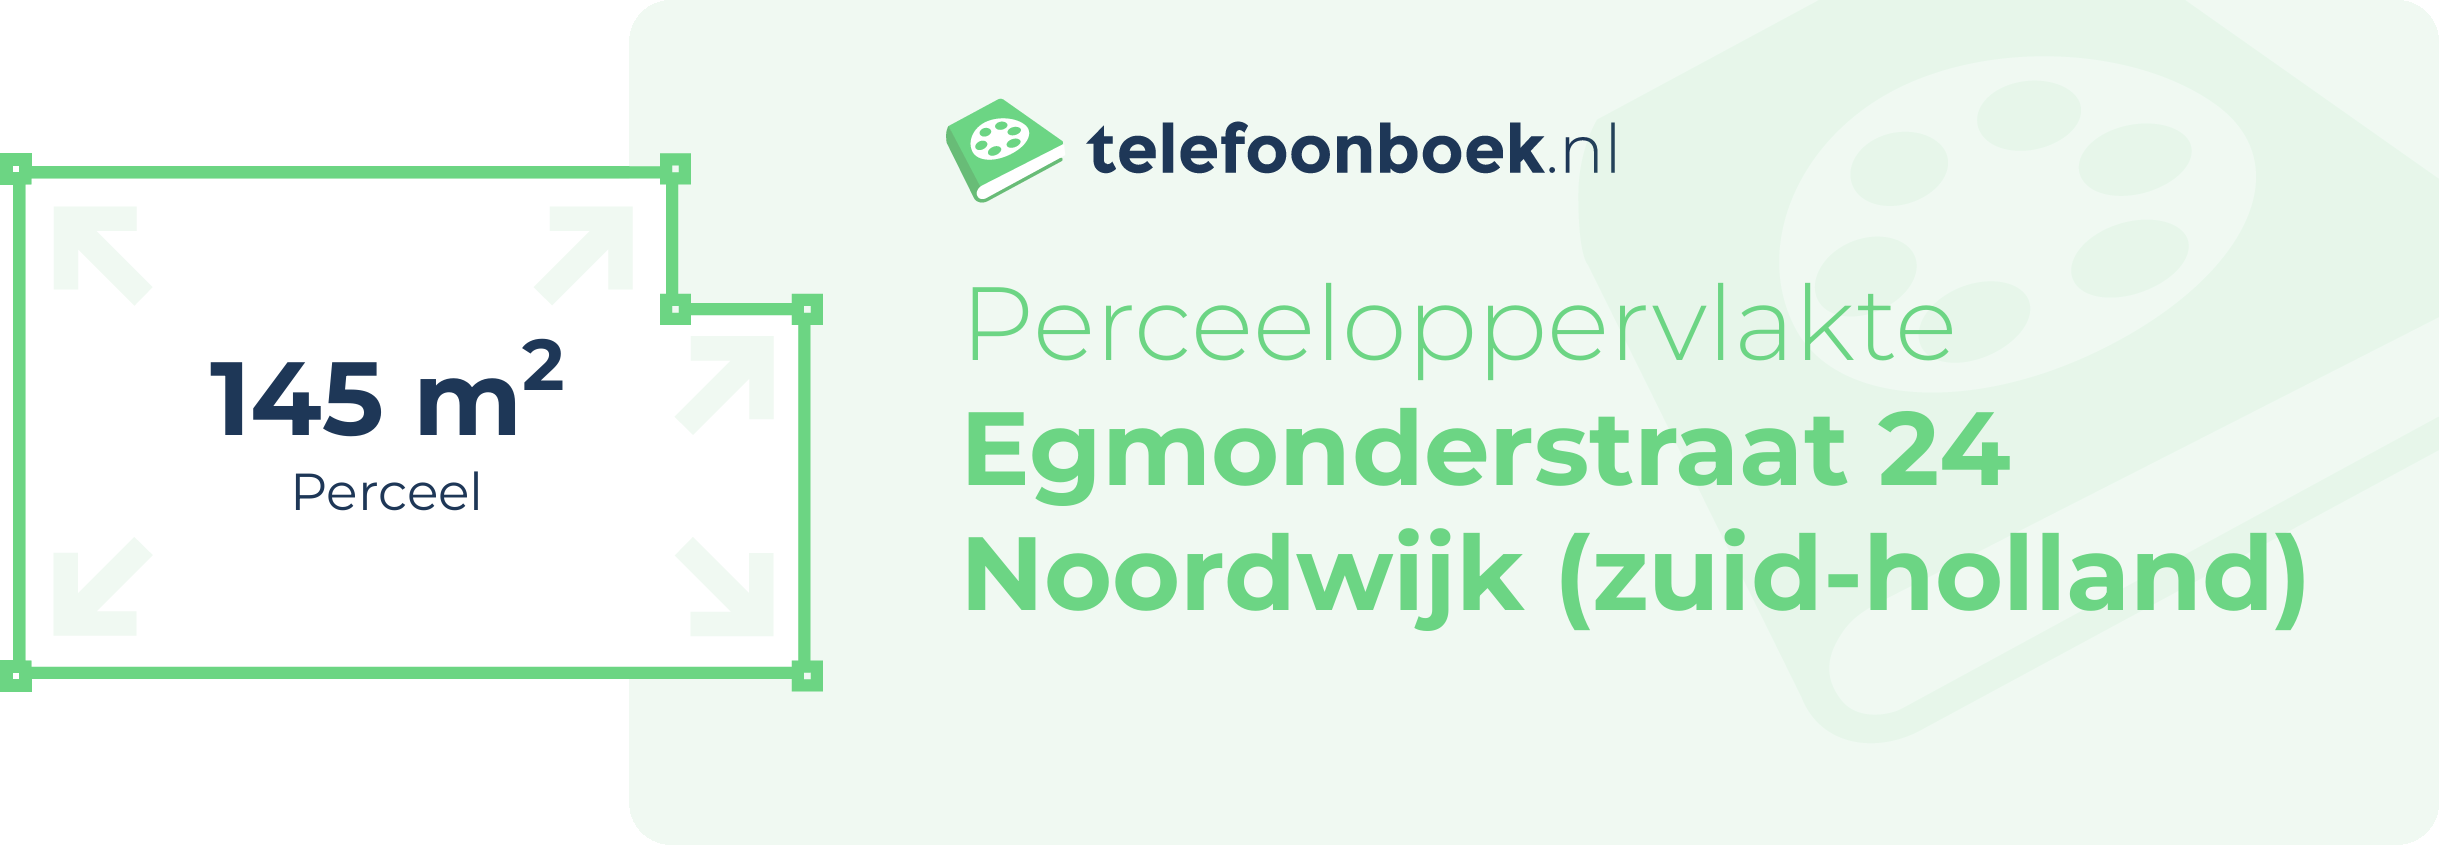 Perceeloppervlakte Egmonderstraat 24 Noordwijk (Zuid-Holland)